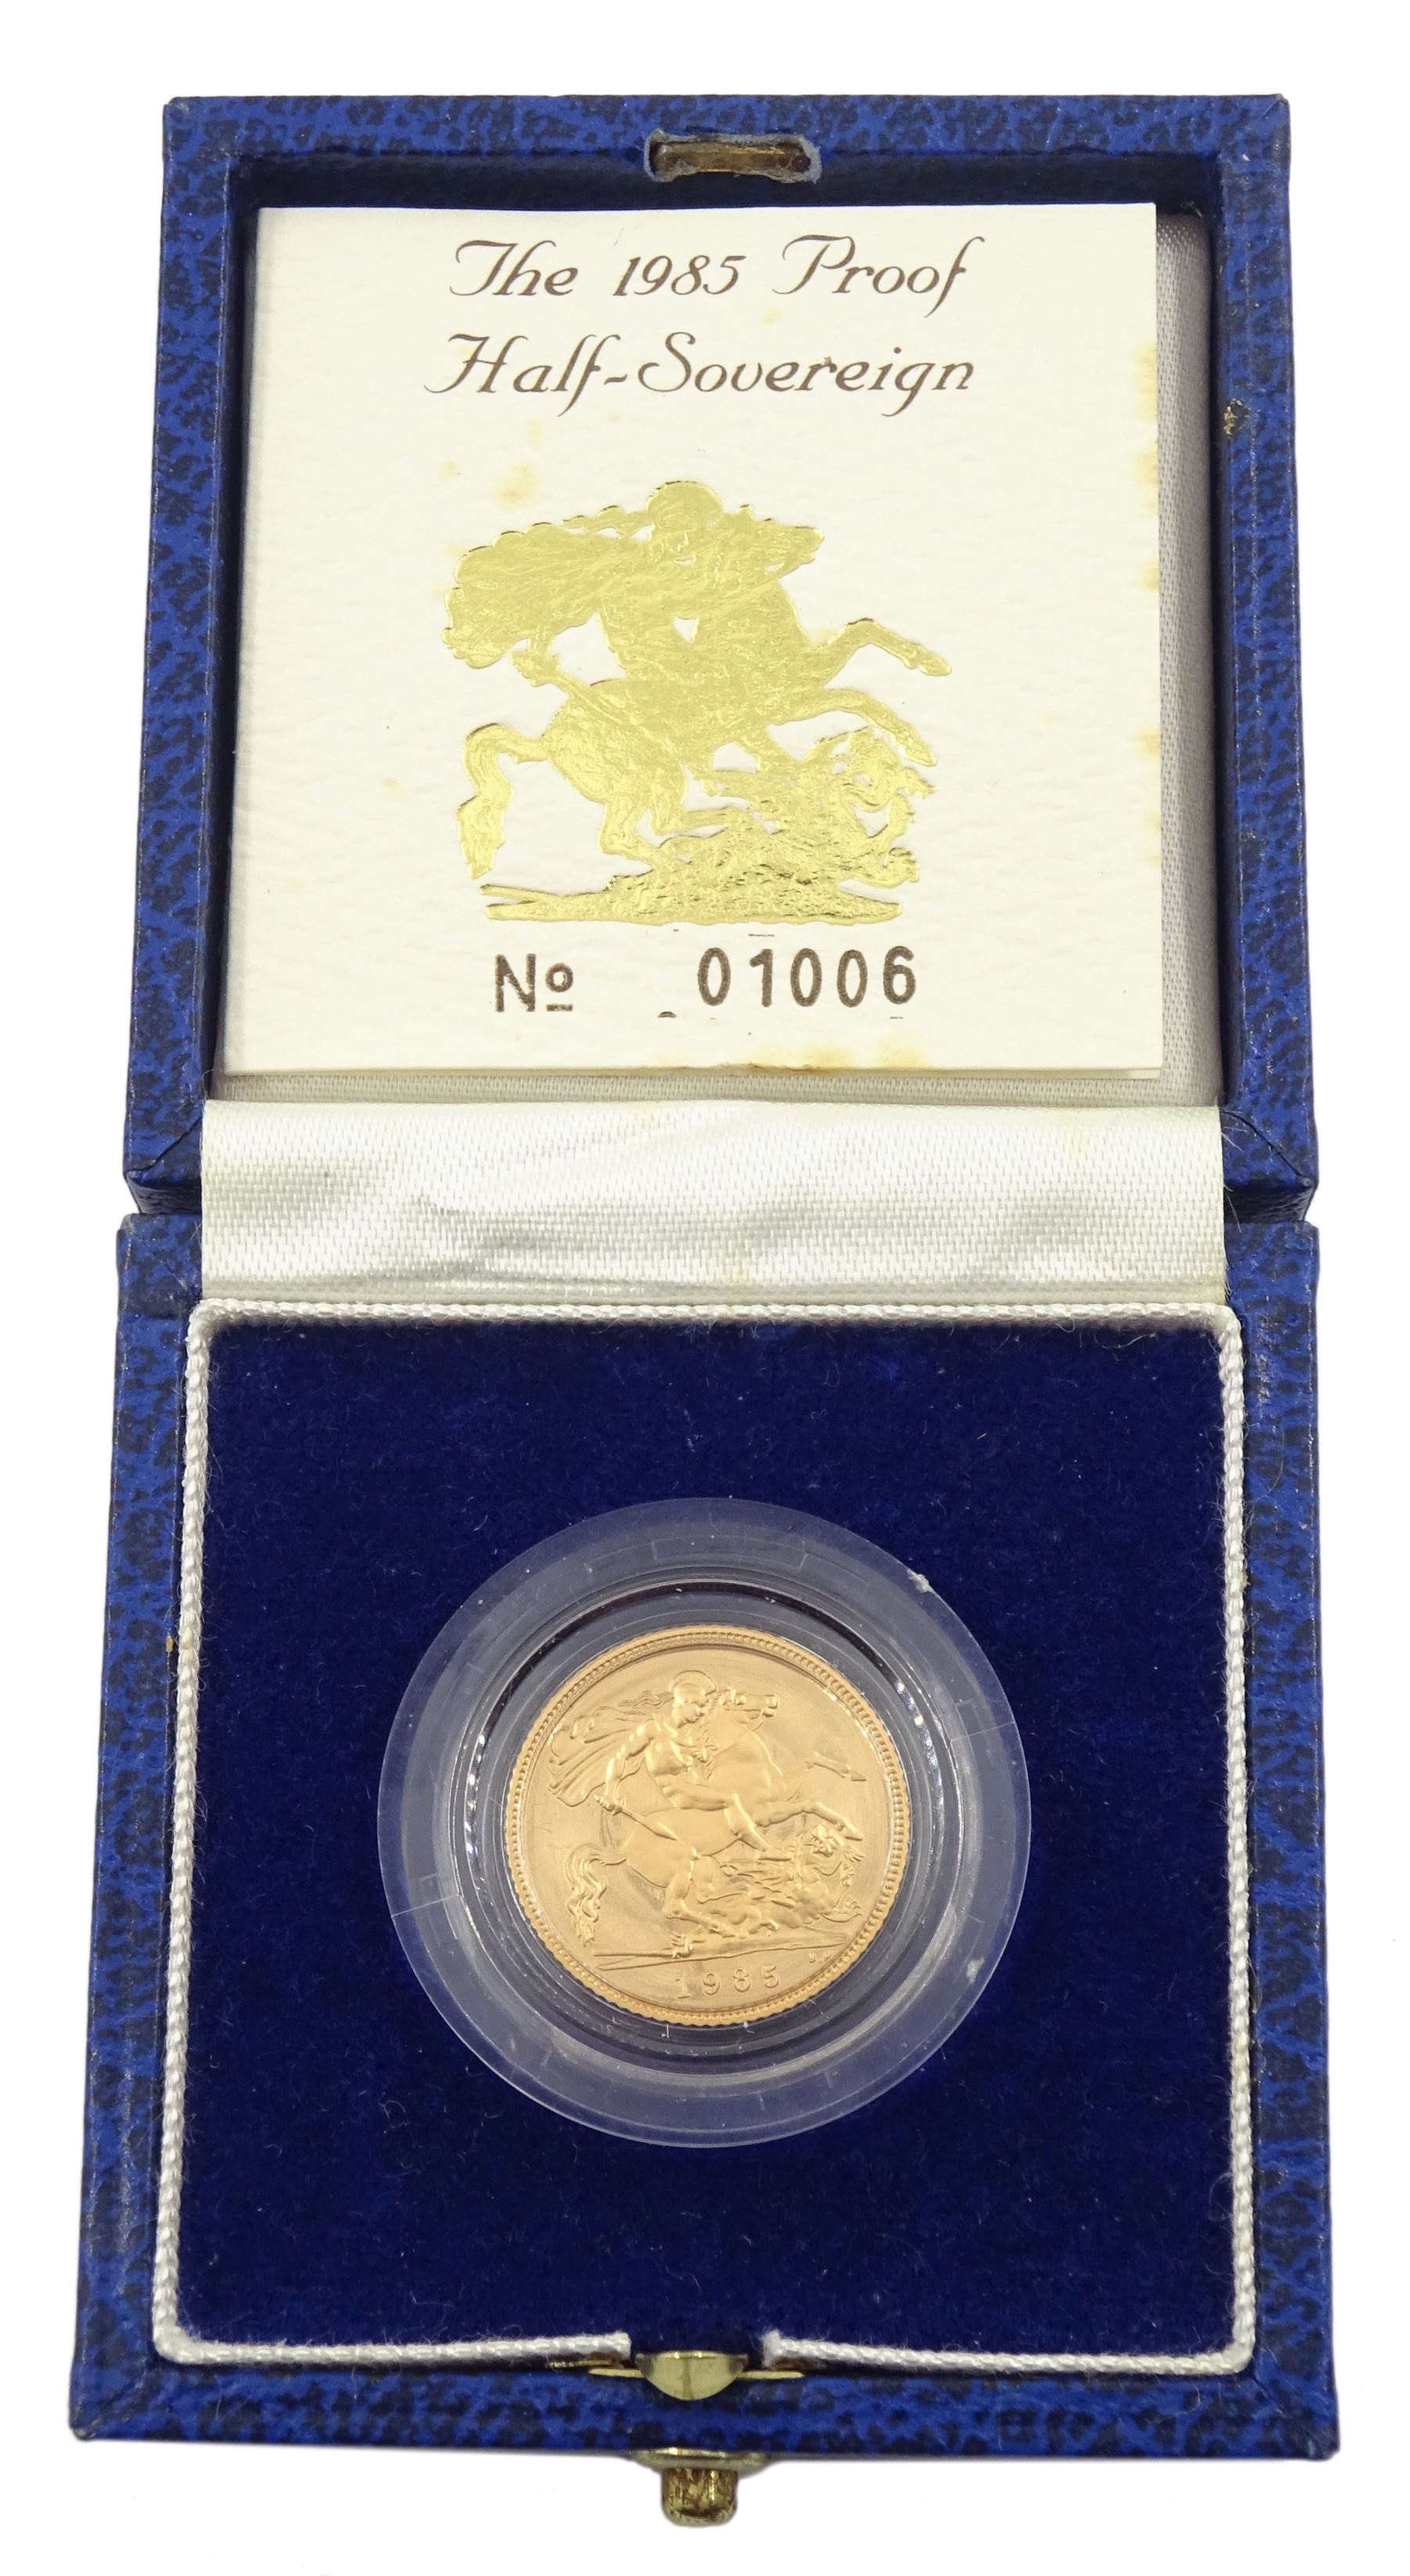 Queen Elizabeth II 1985 gold proof half sovereign coin - Image 3 of 3